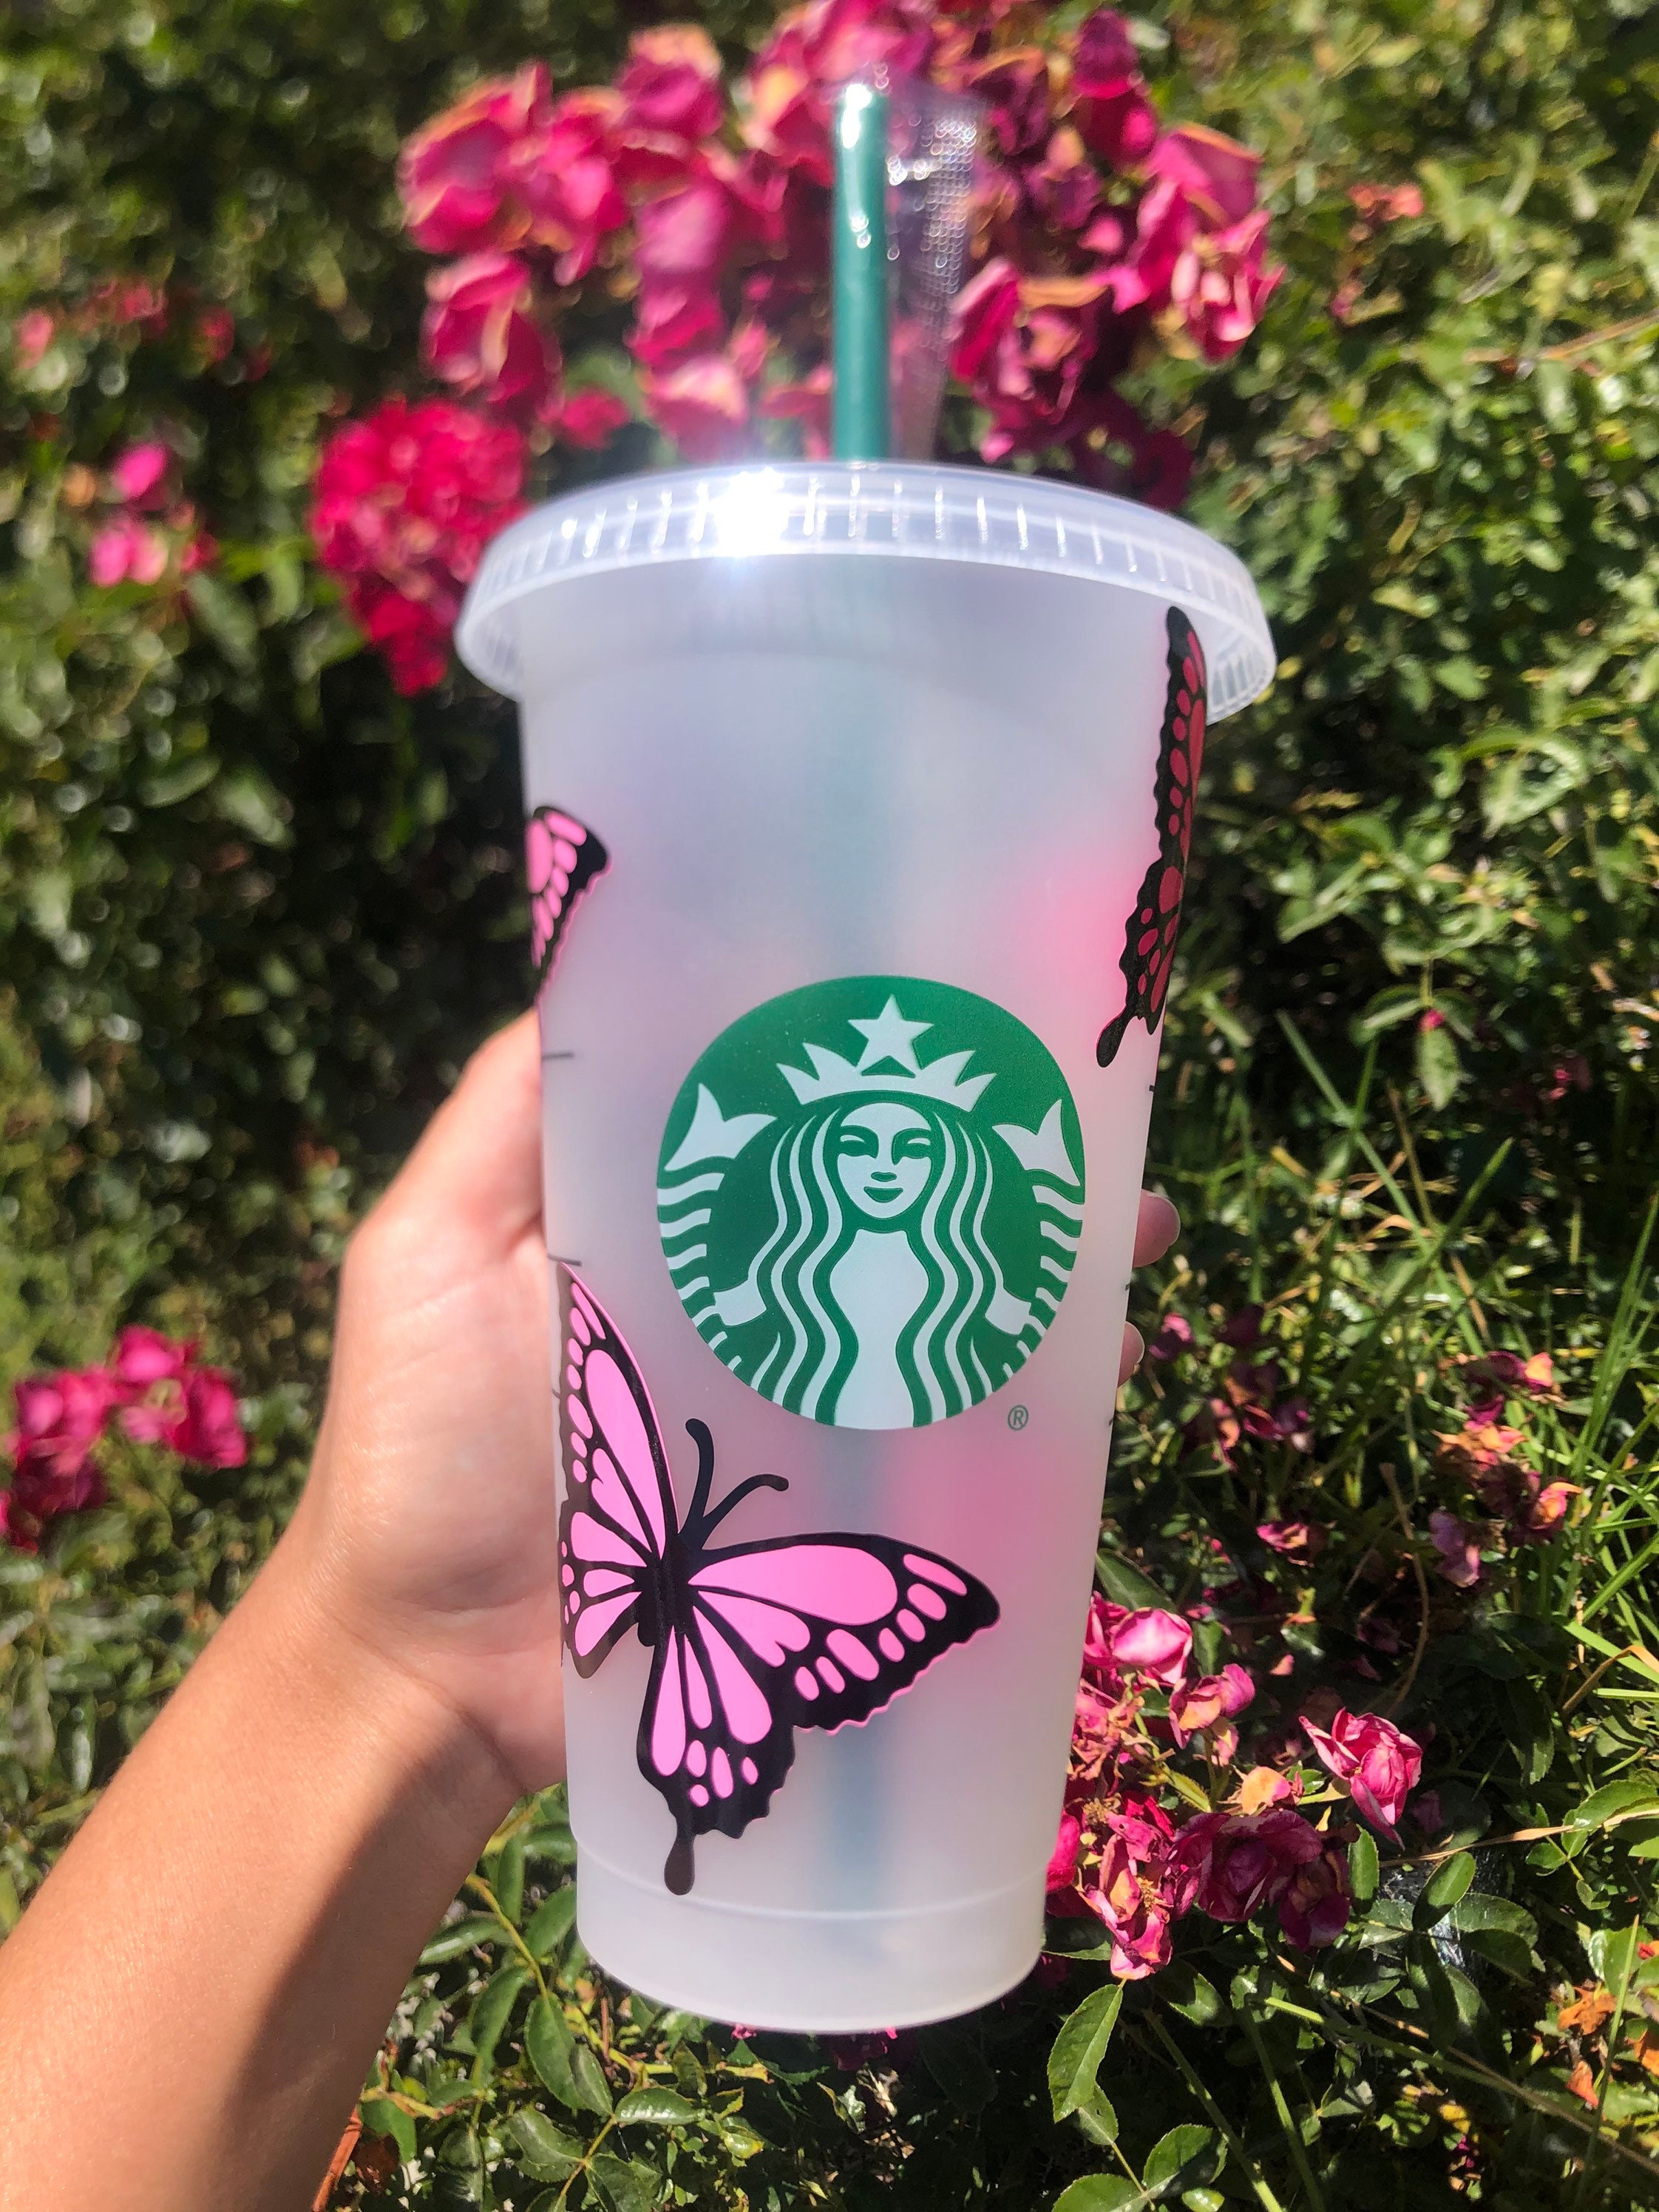 butterflies Starbucks cup